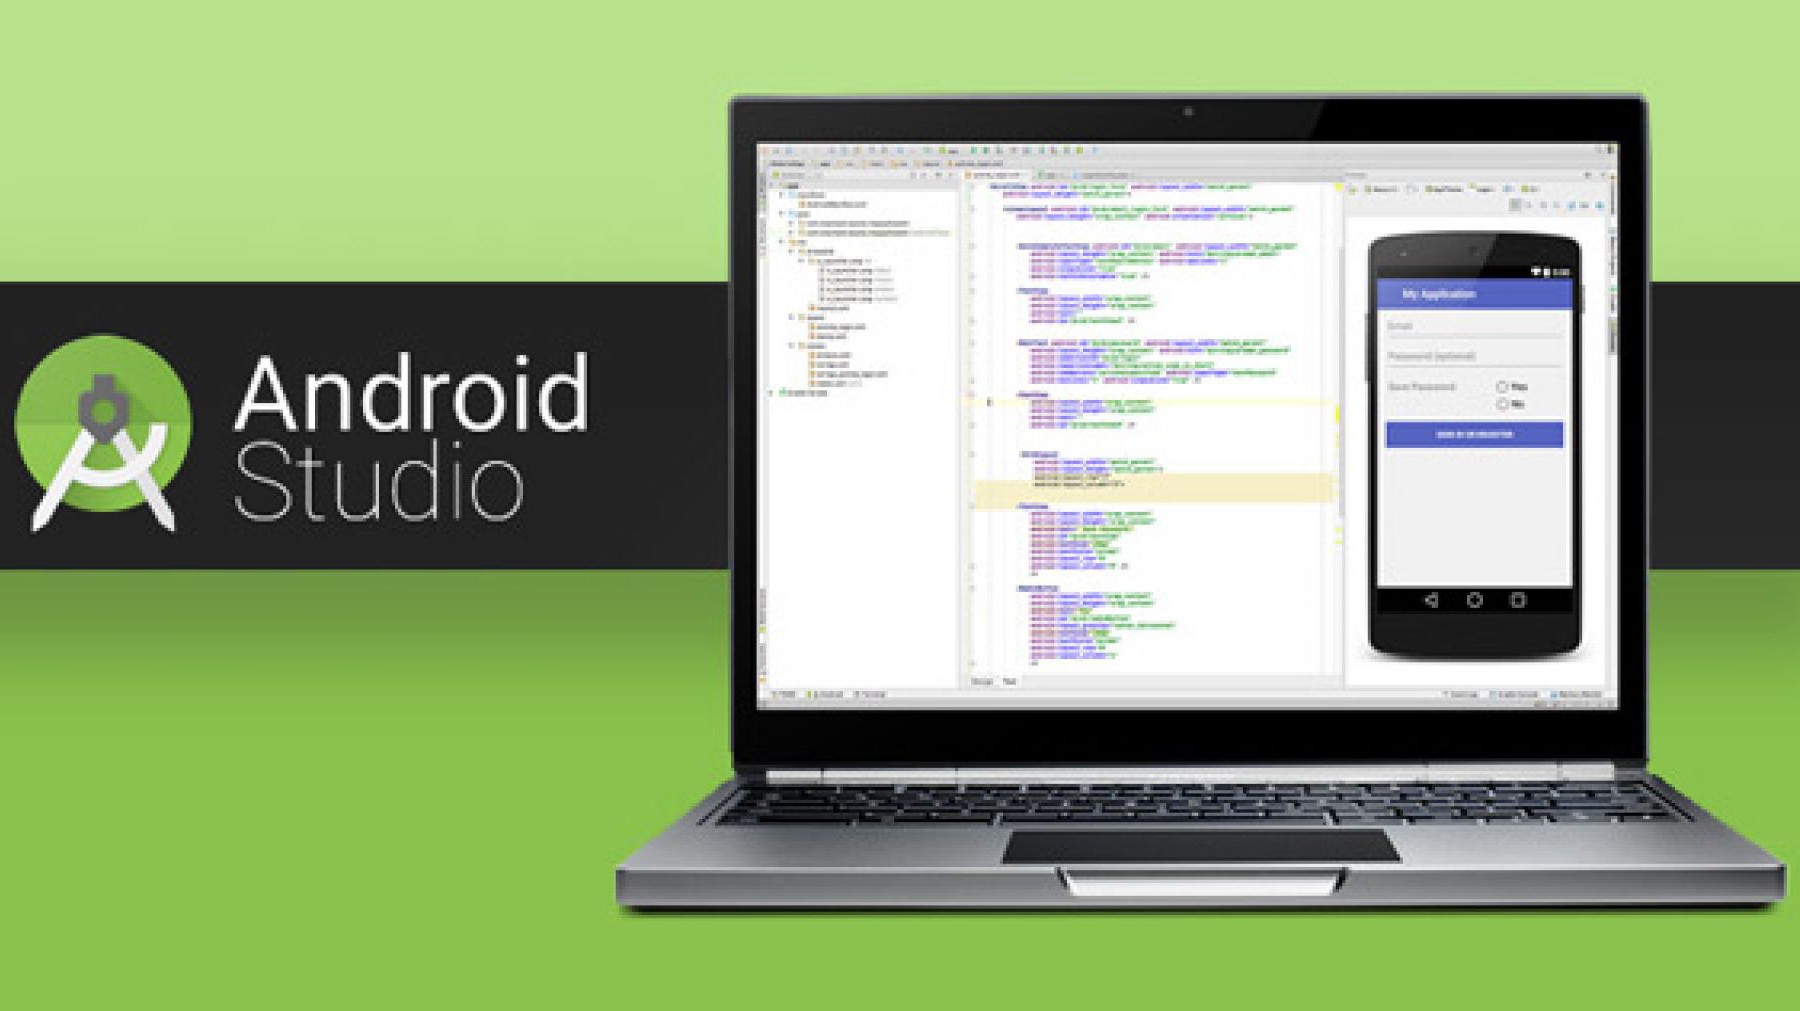 Android Studio là gì? Cách tải và sử dụng ra sao